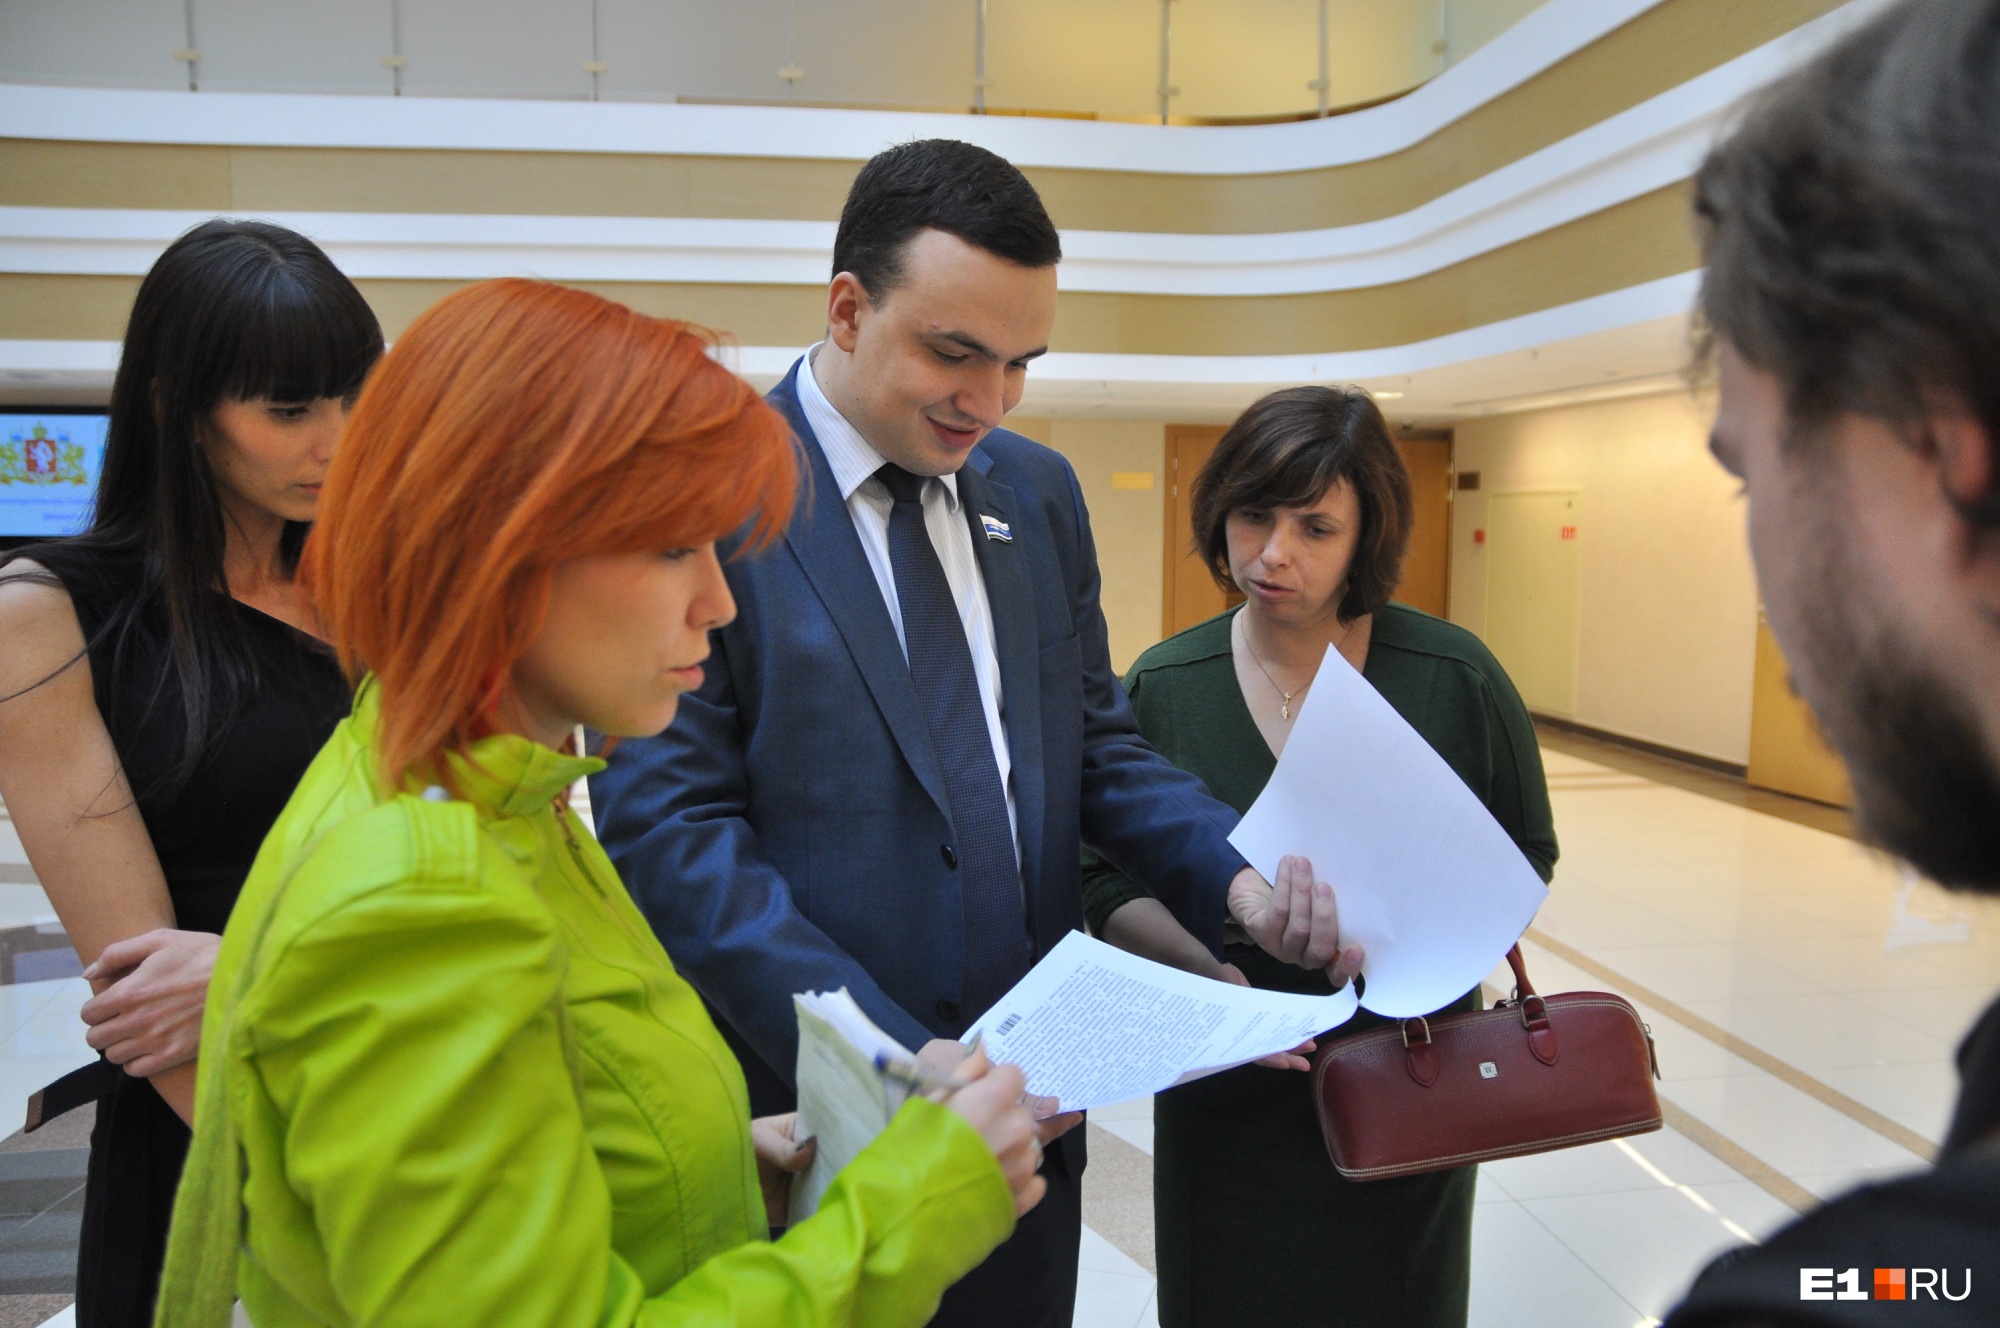 Бывший депутат Госдумы Дмитрий Ионин после поражения на выборах перейдет в свердловское правительство